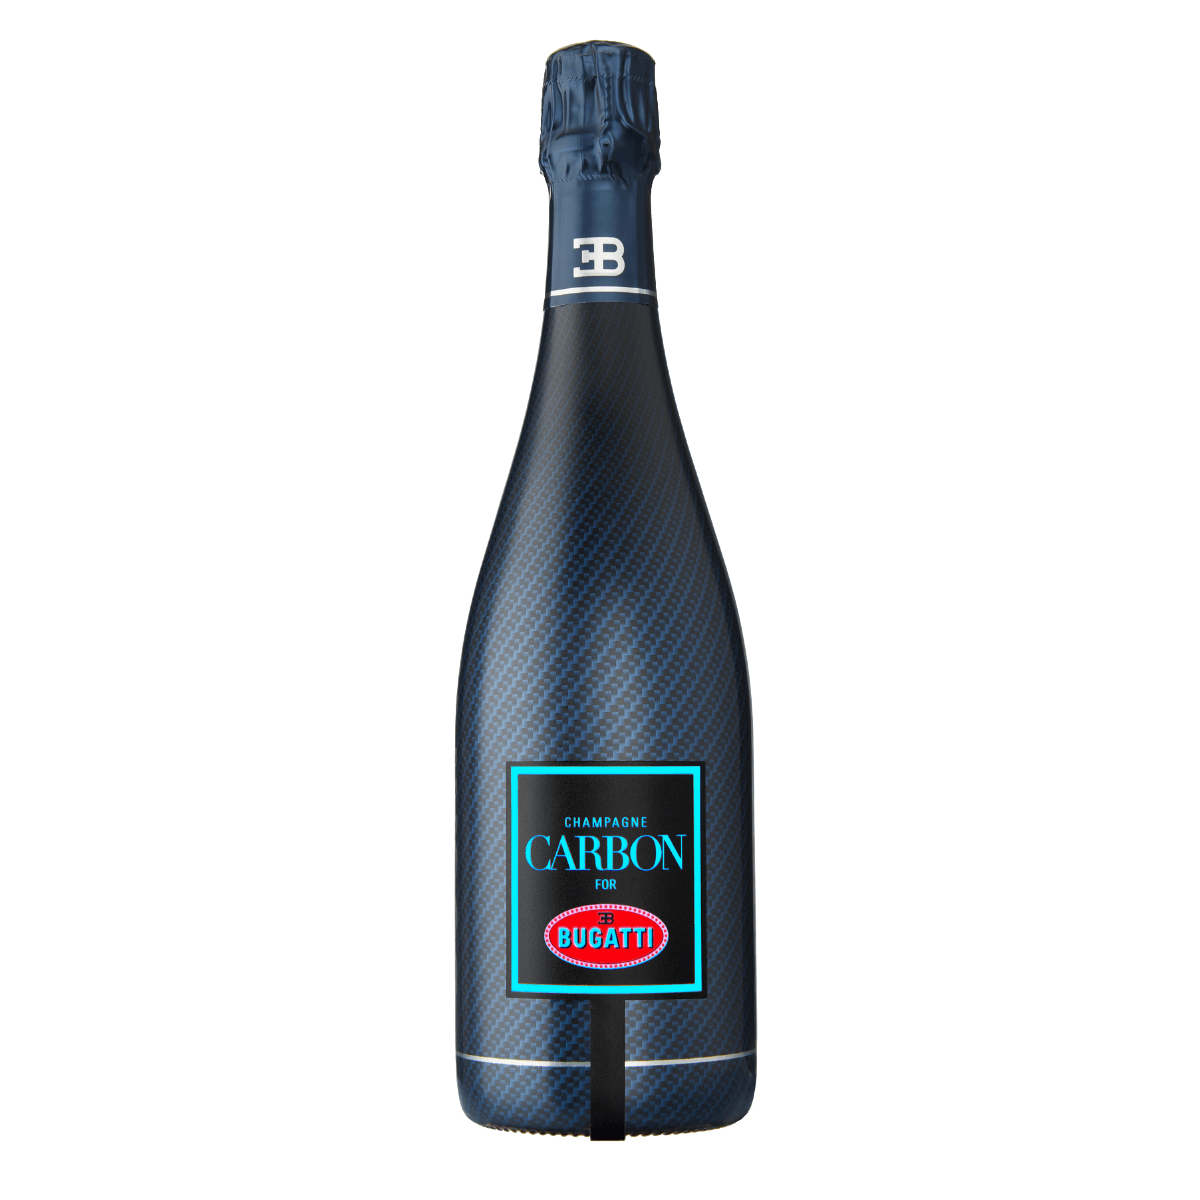 Bugatti Collection – USA Carbon Champagne